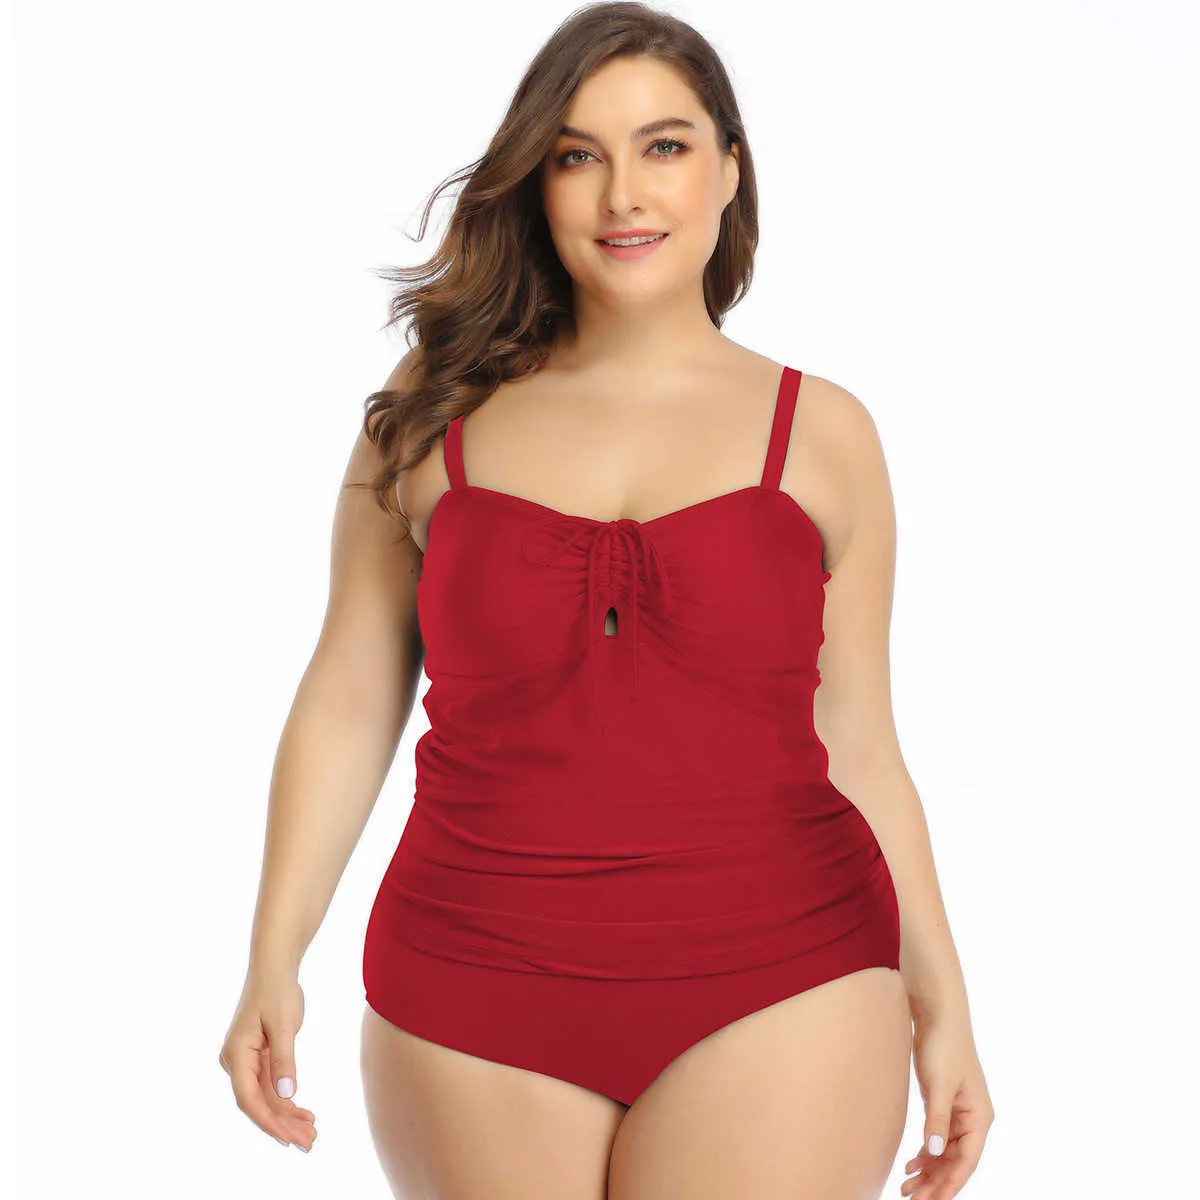 Plus Size Swimwear Gomans Nowy Split Duży Swimsuit Hot Selling Plised Suspended Solid Color Split Kąpielowy garnitur Fat Woman